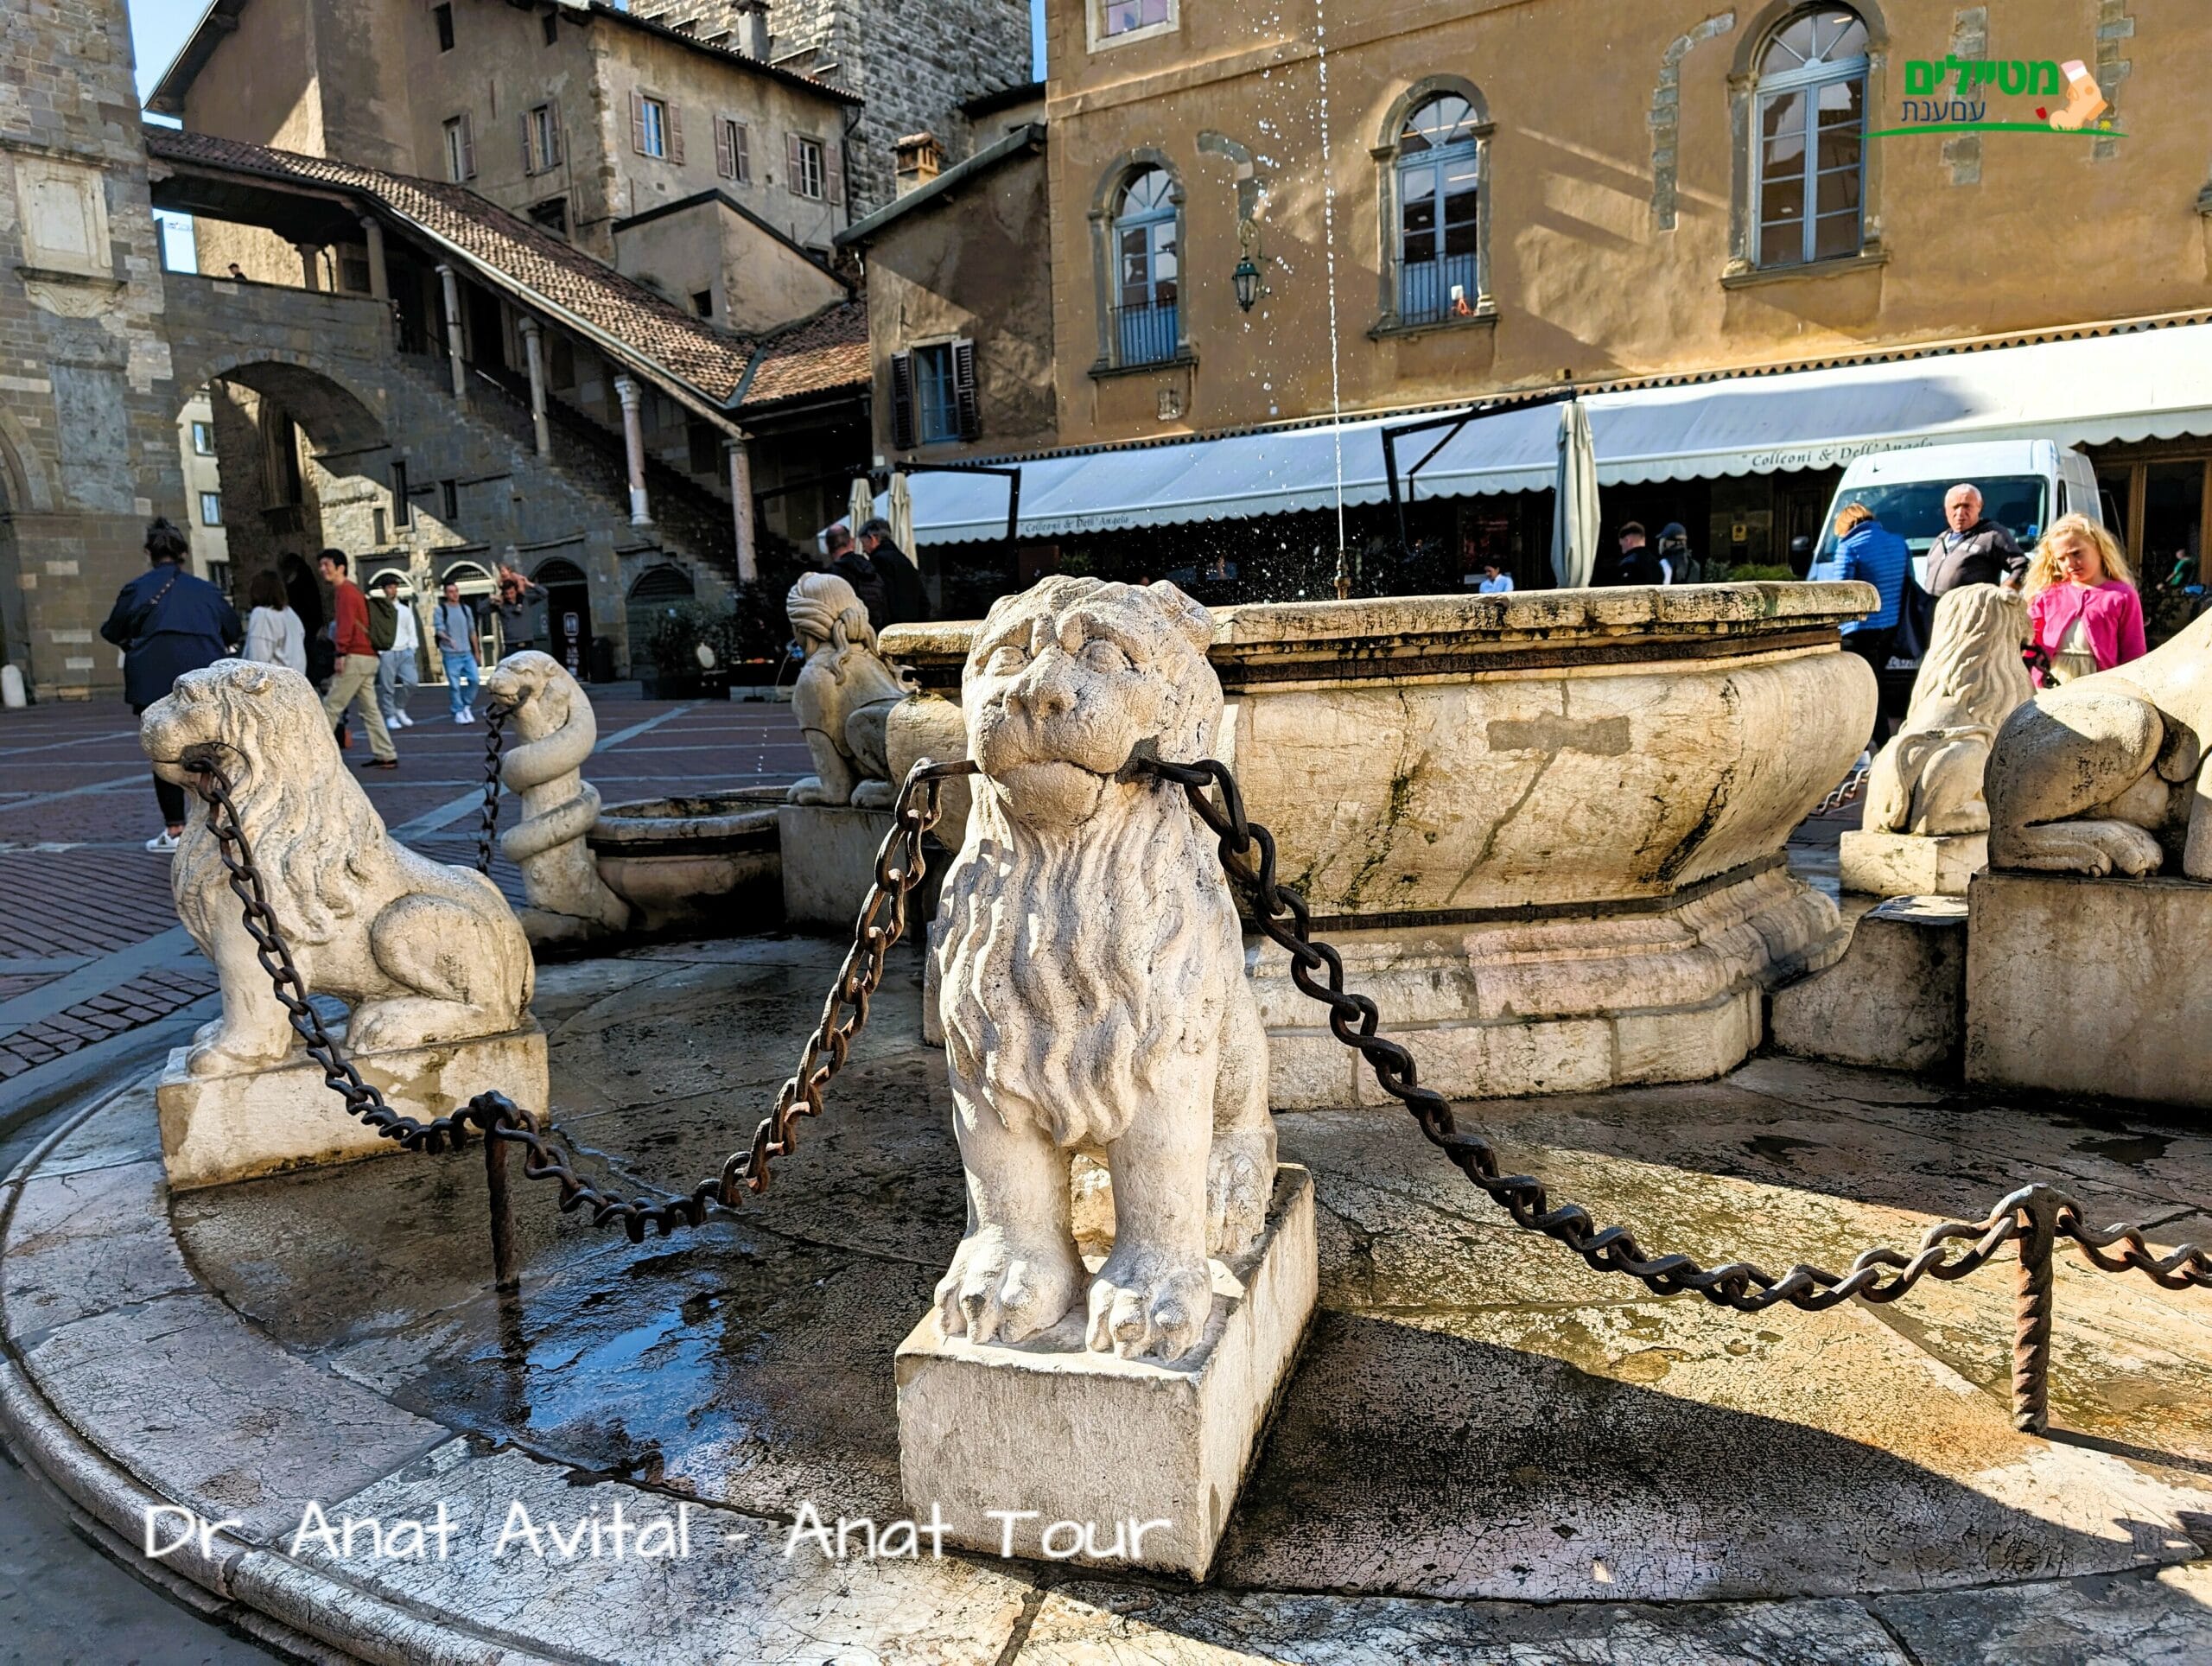 כיכר וקיה בעיר העליונה העתיקה של ברגמו (Piazza Vecchia Bergamo Alta), איטליה, צילום: ד"ר ענת אביטל